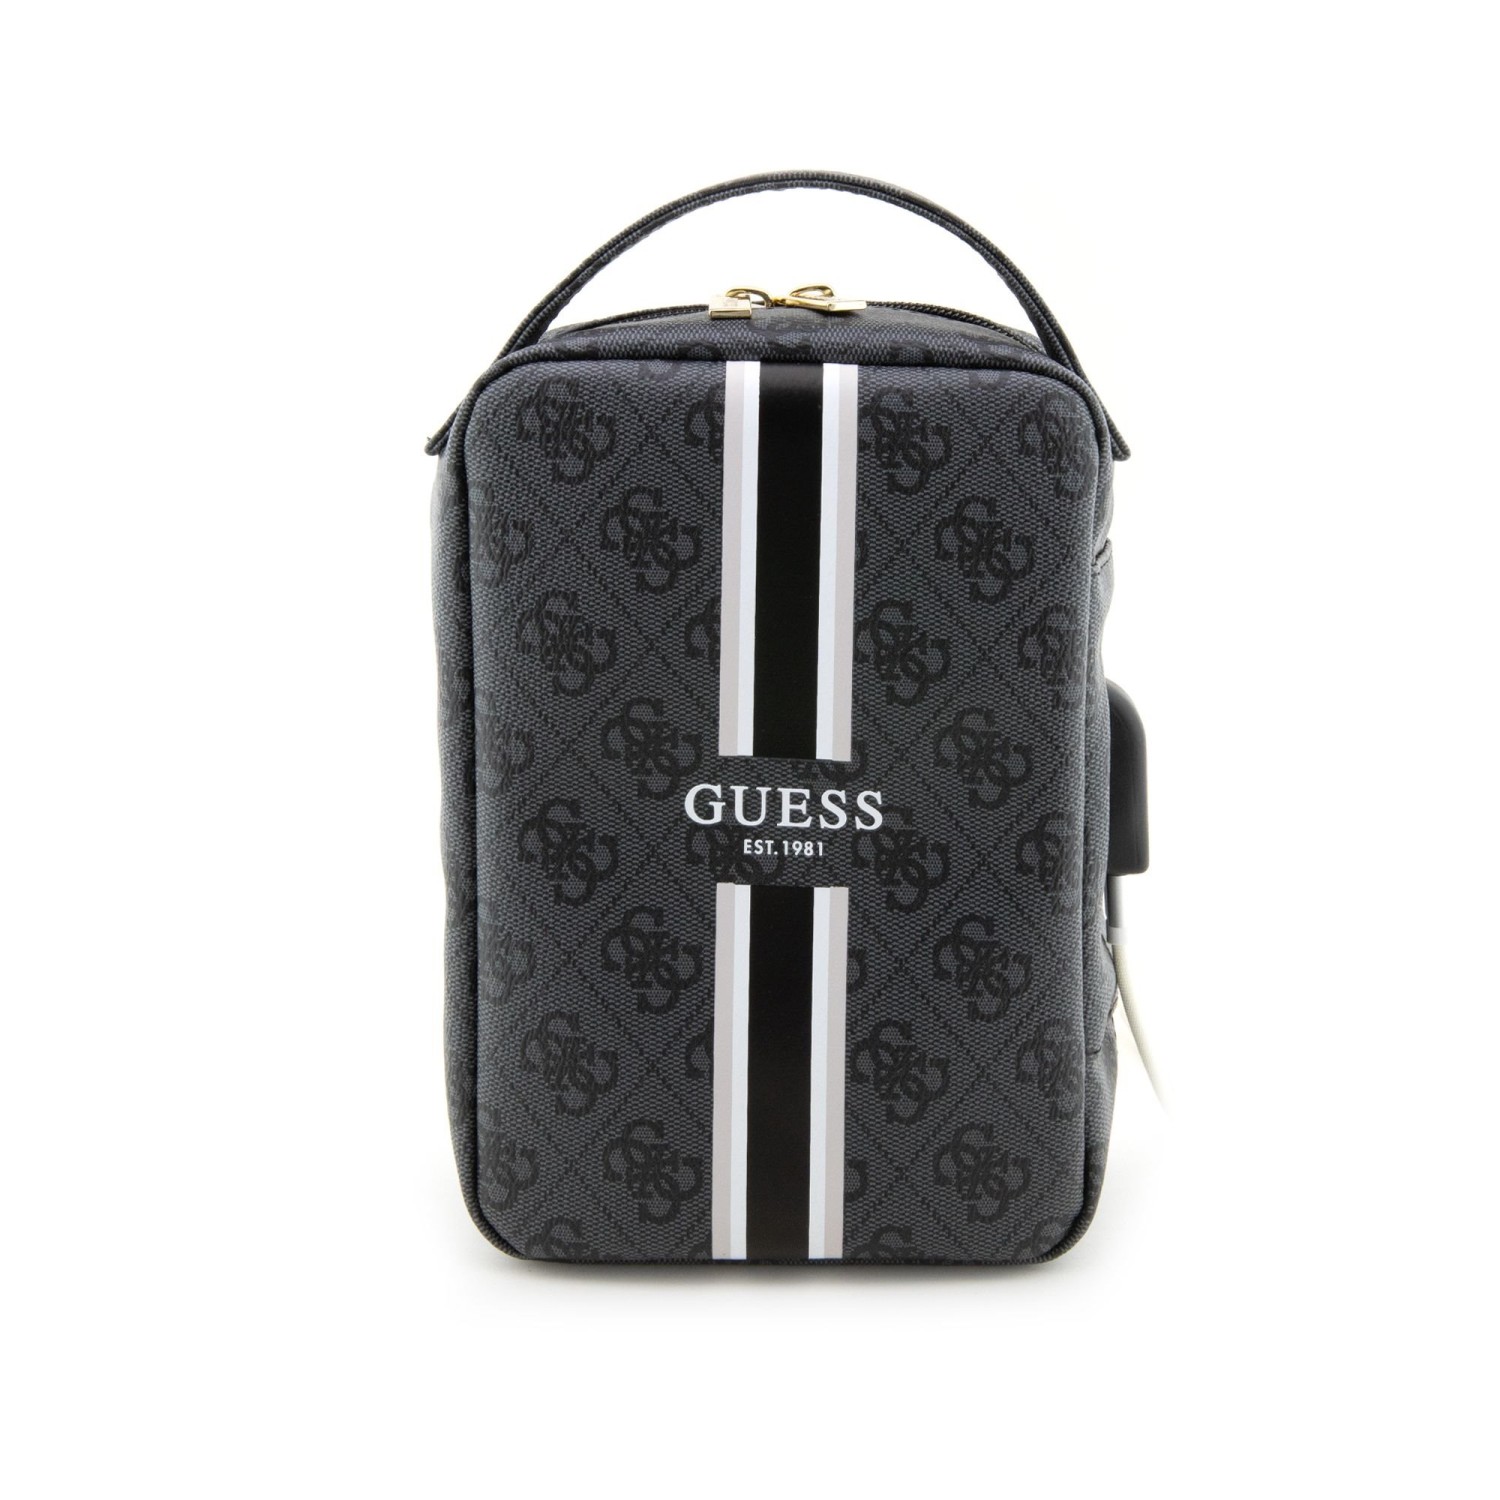 Univerzální cestovní taška Guess PU 4G Printed Stripes, černá